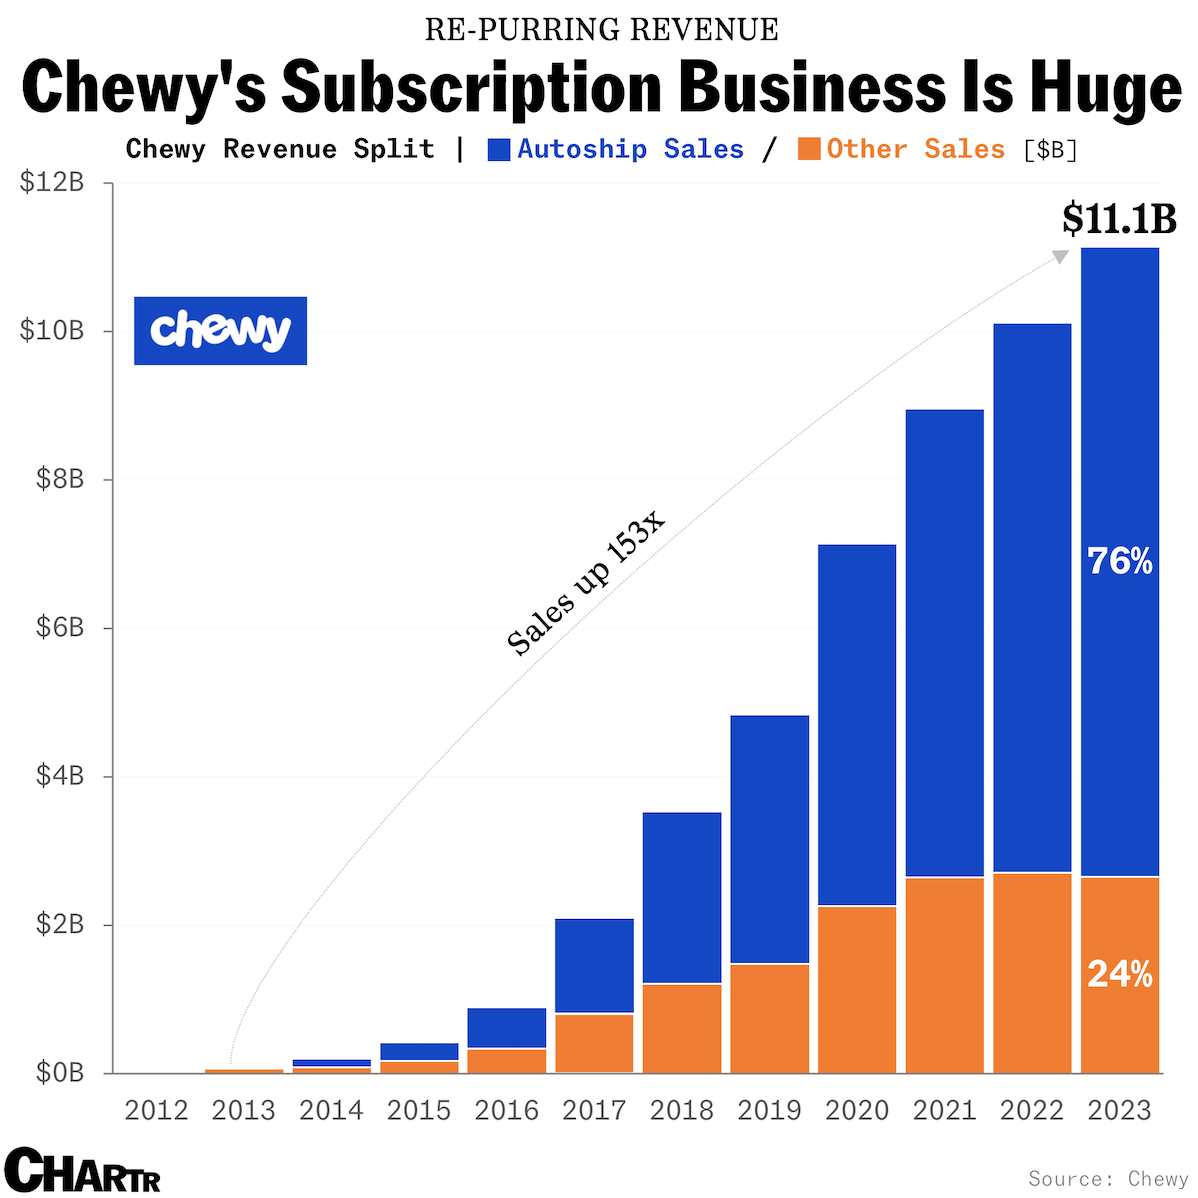 Chewy autoship sales